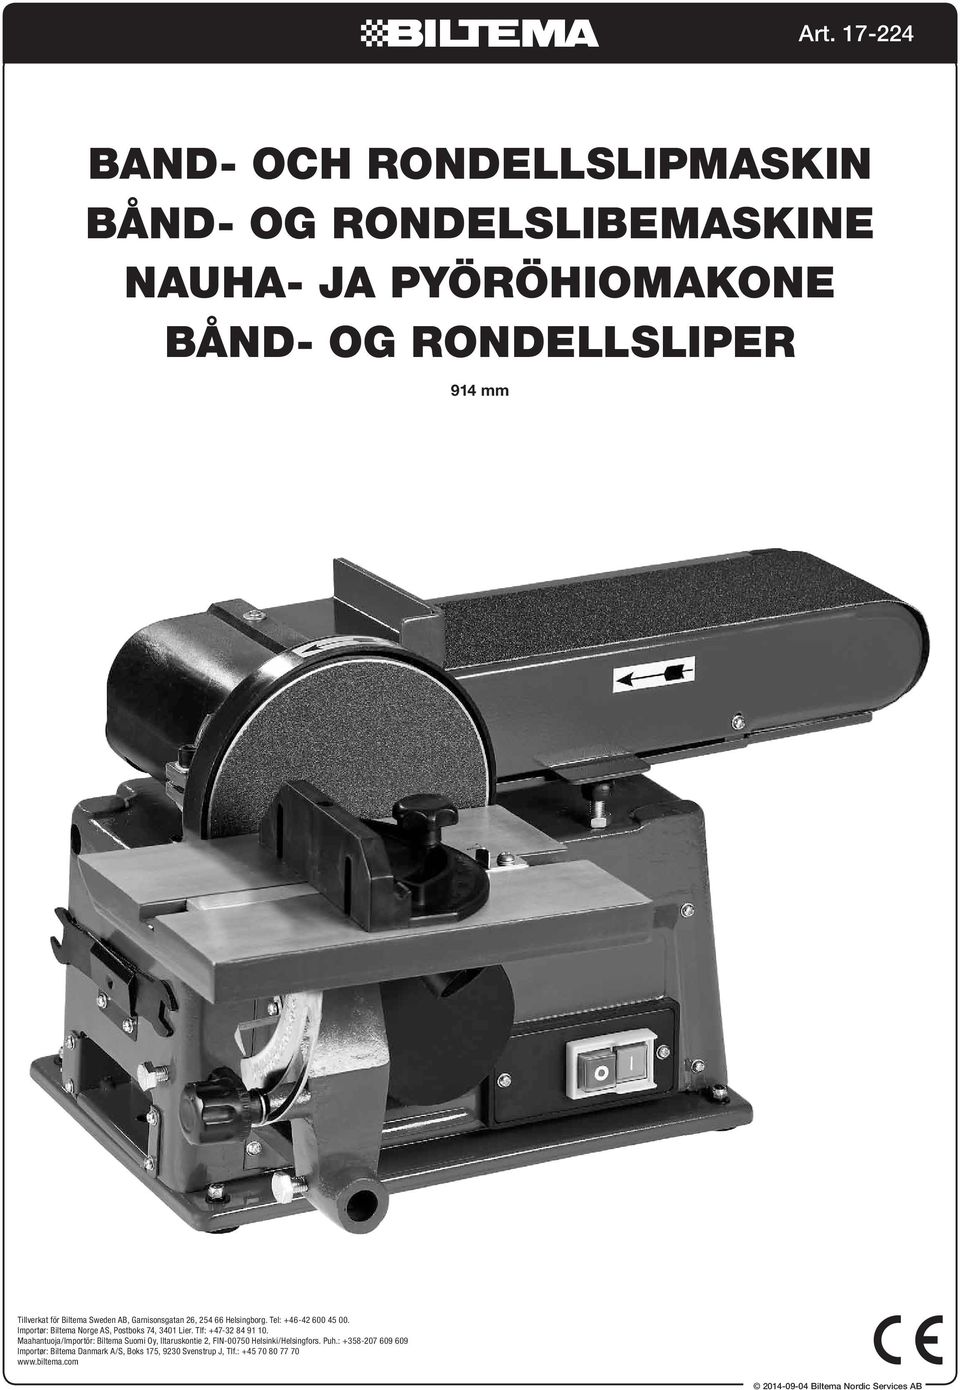 Tlf: +47-32 84 91 10. Maahantuoja/Importör: Biltema Suomi Oy, Iltaruskontie 2, FIN-00750 Helsinki/Helsingfors. Puh.